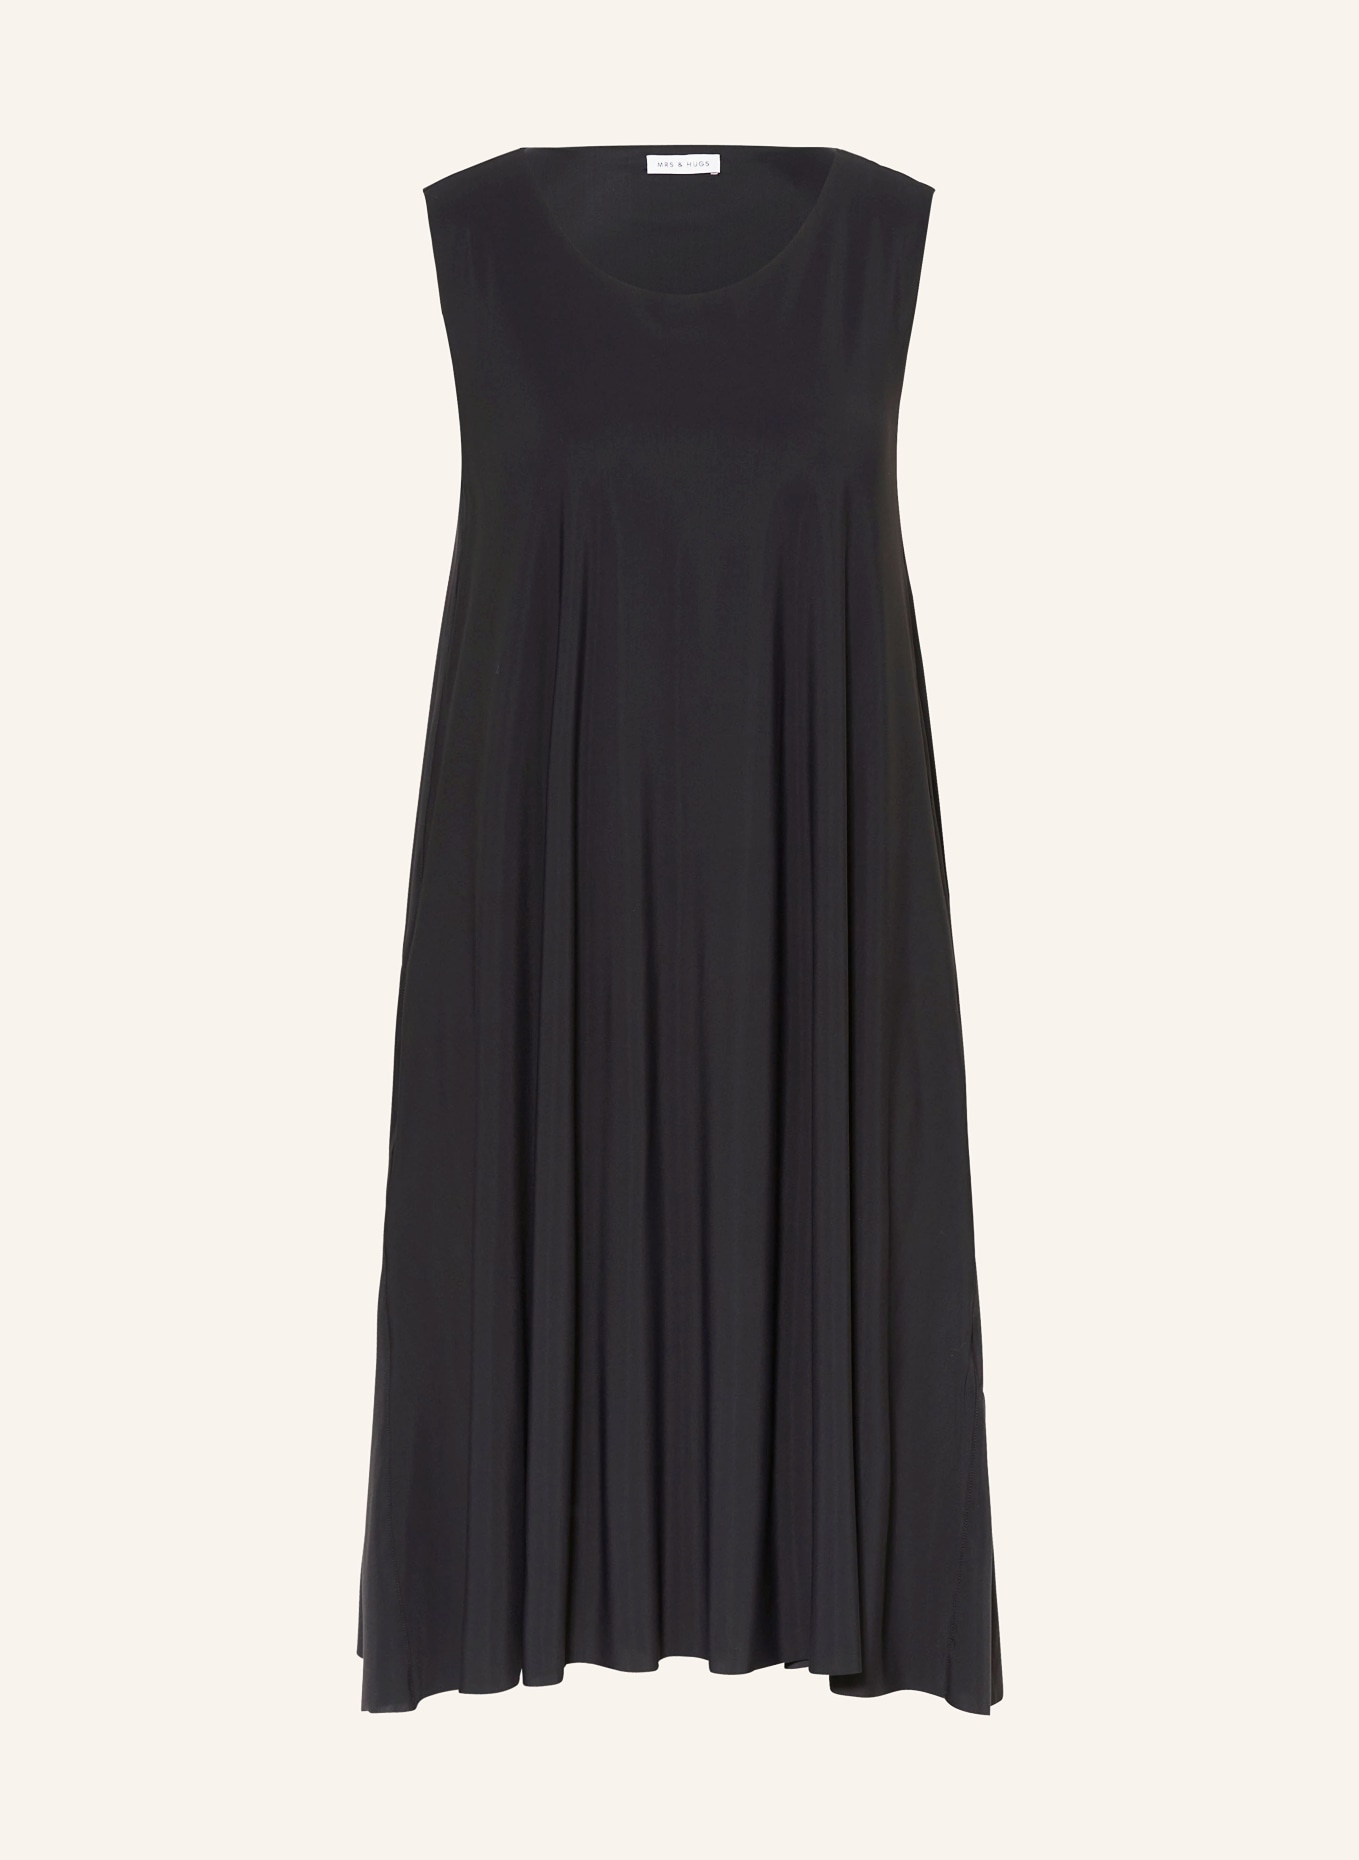 MRS & HUGS Dress, Color: BLACK (Image 1)